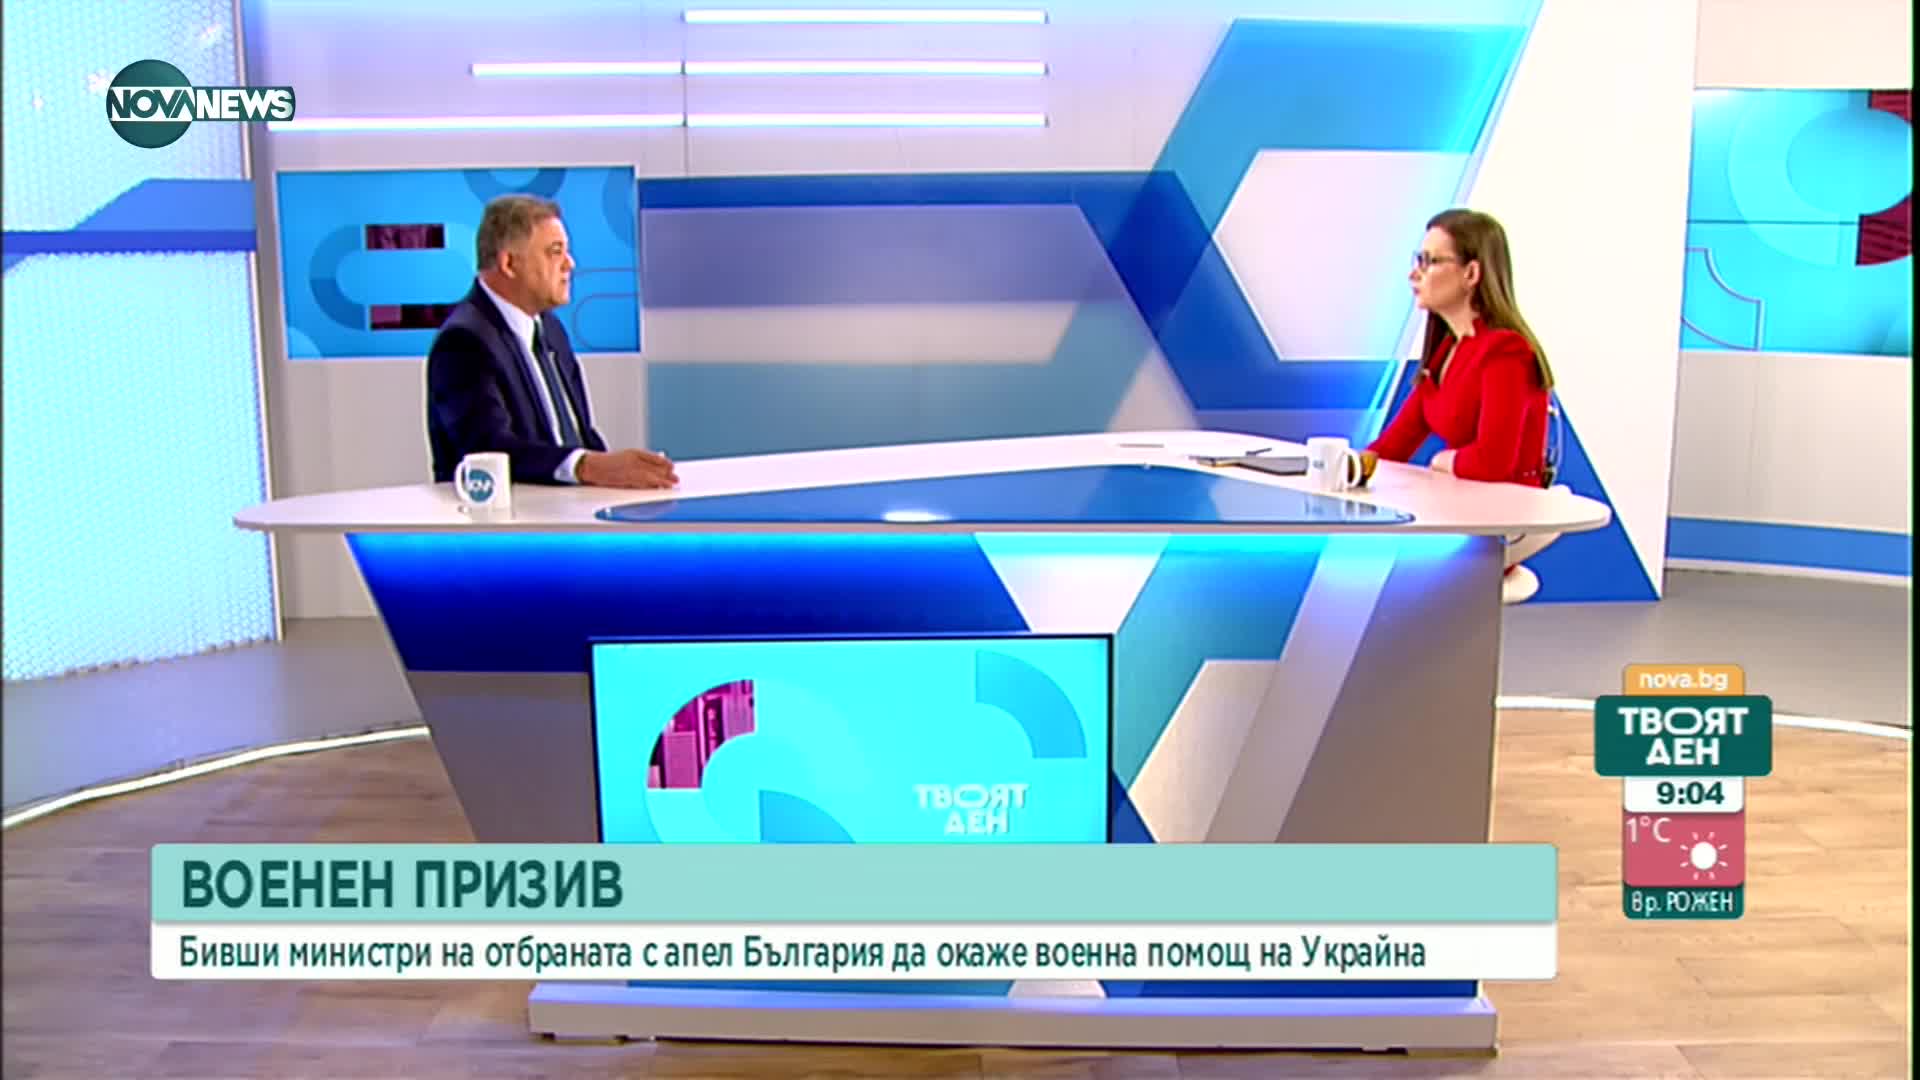 Ненчев: Няма път към преговори, трябва да се търсят варианти за сваляне на Путин от власт